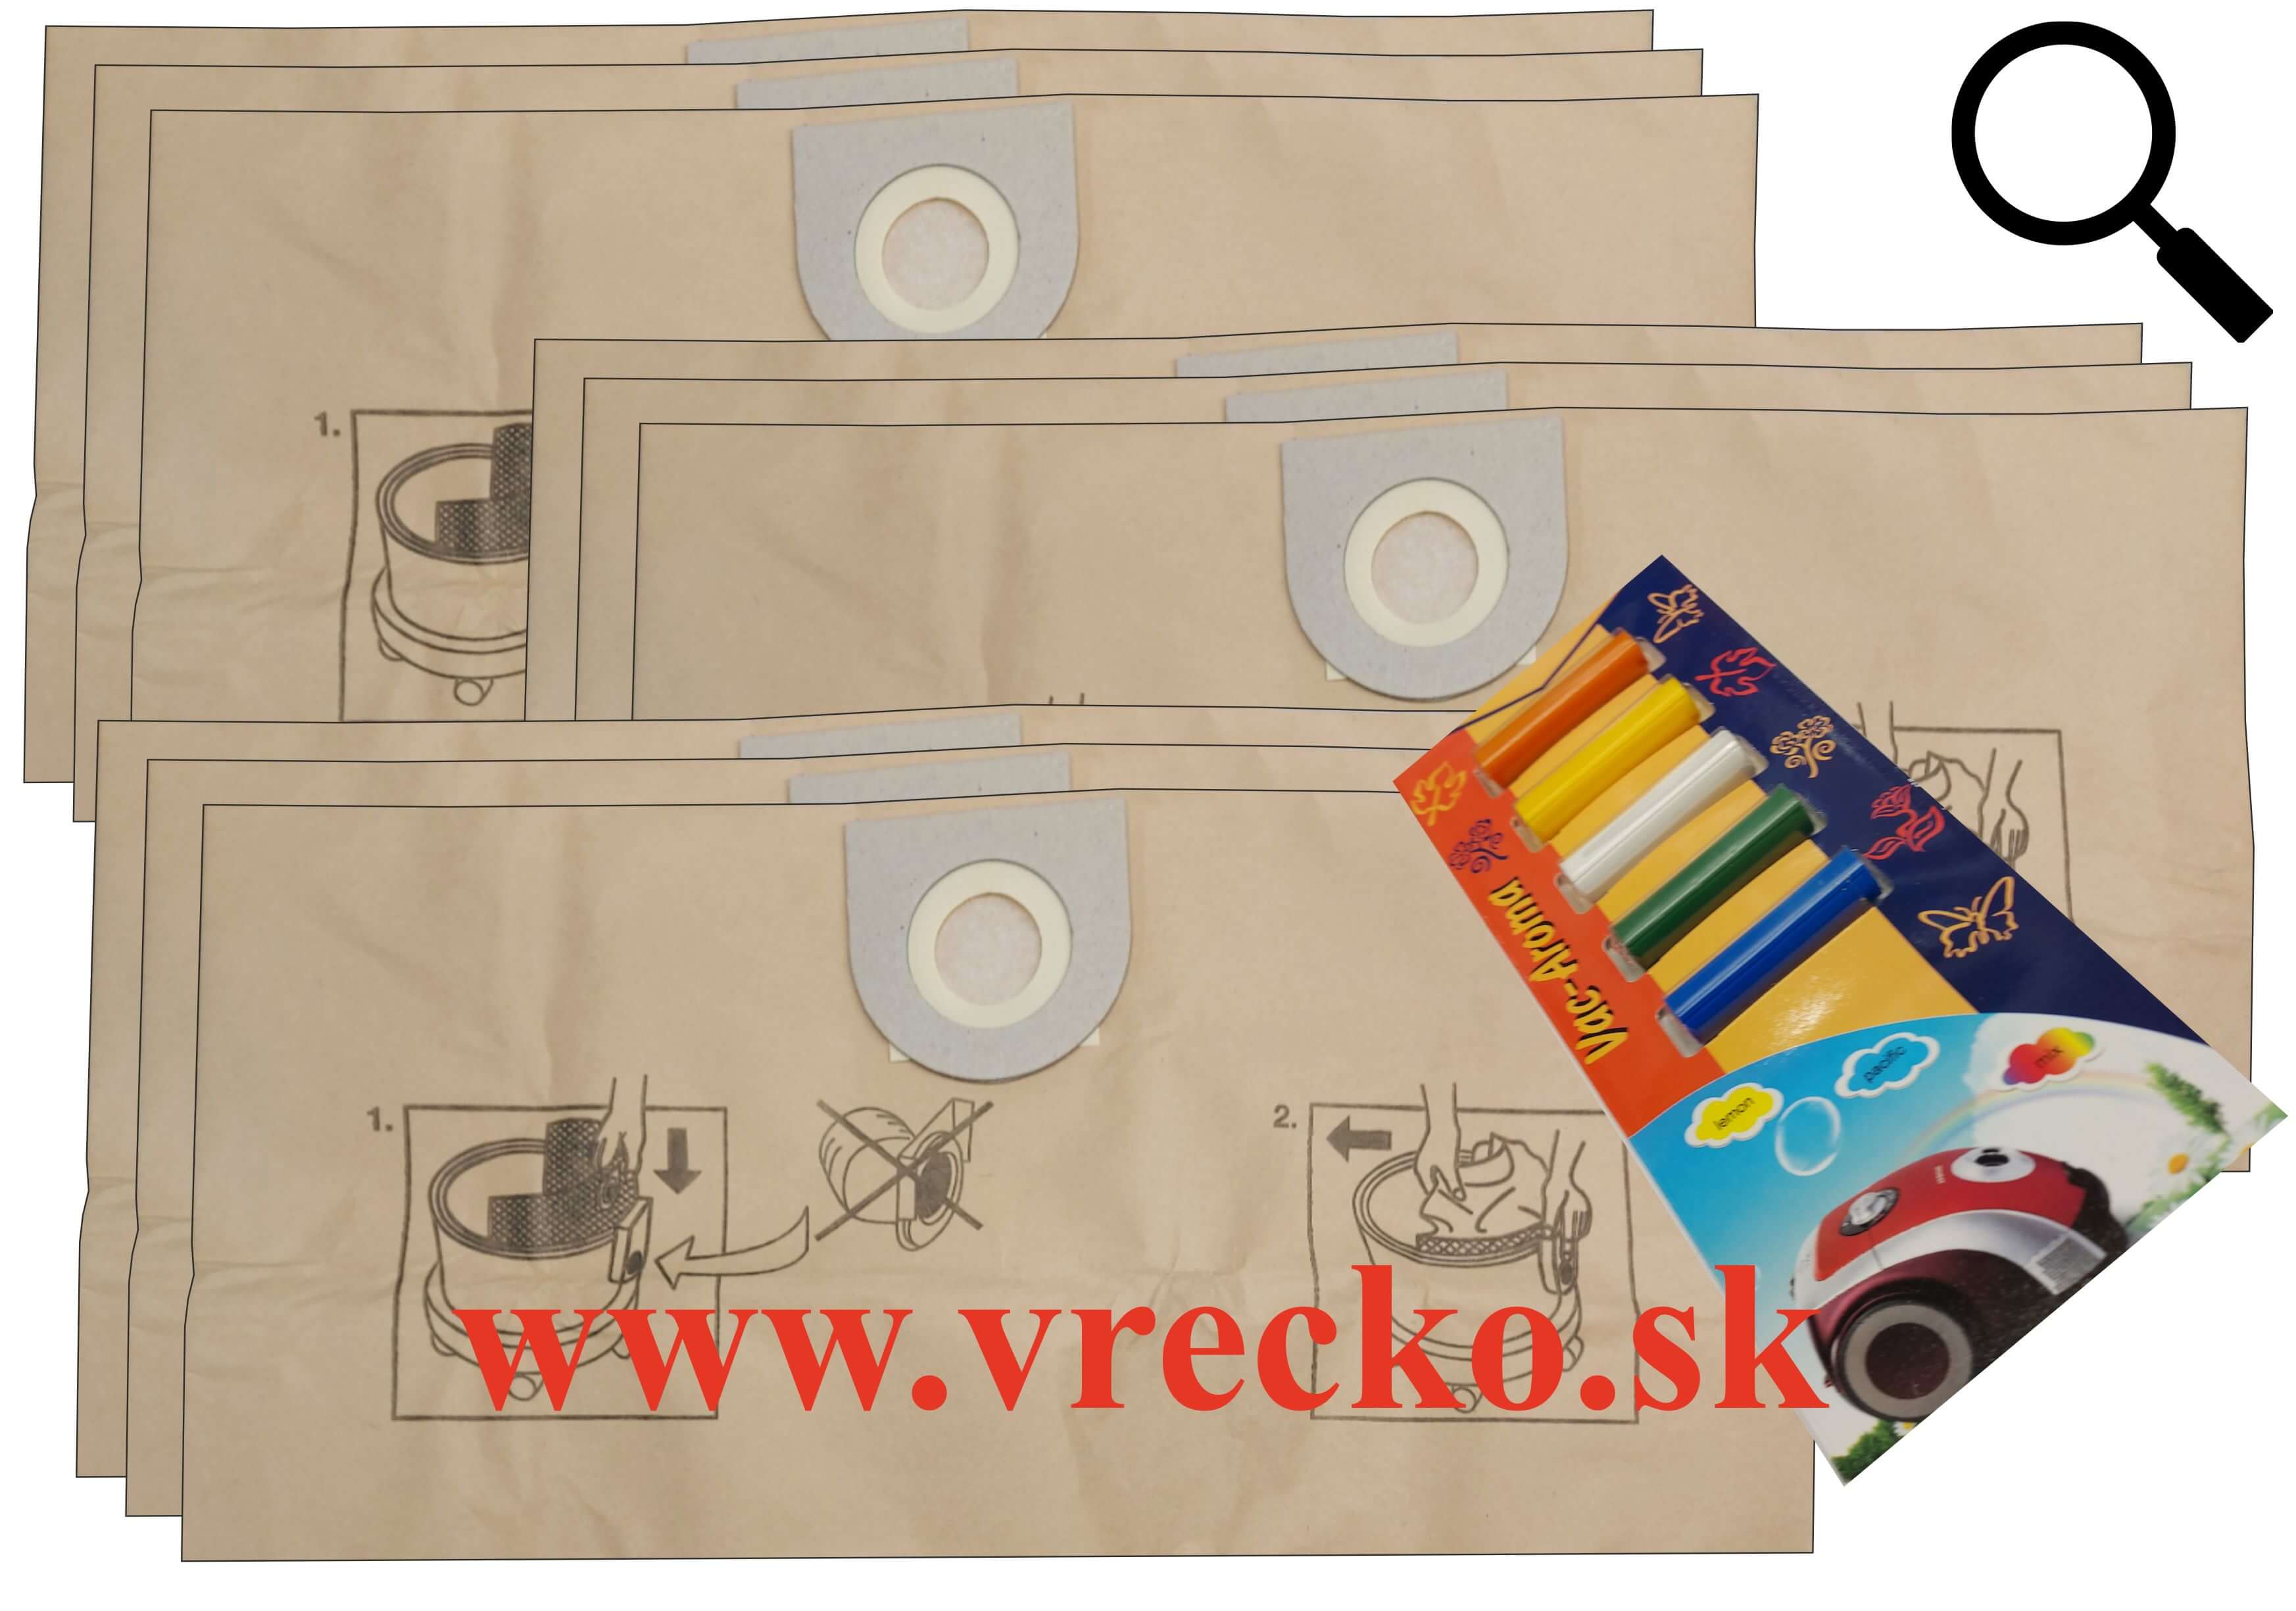 VAX 1000 - XL zvýhodnené balenie papierových vreciek do vysávača + 5 ks vôní do vysávačov MIX ZDARMA za cenu 3,99 (celkovo vreciek 9 ks)